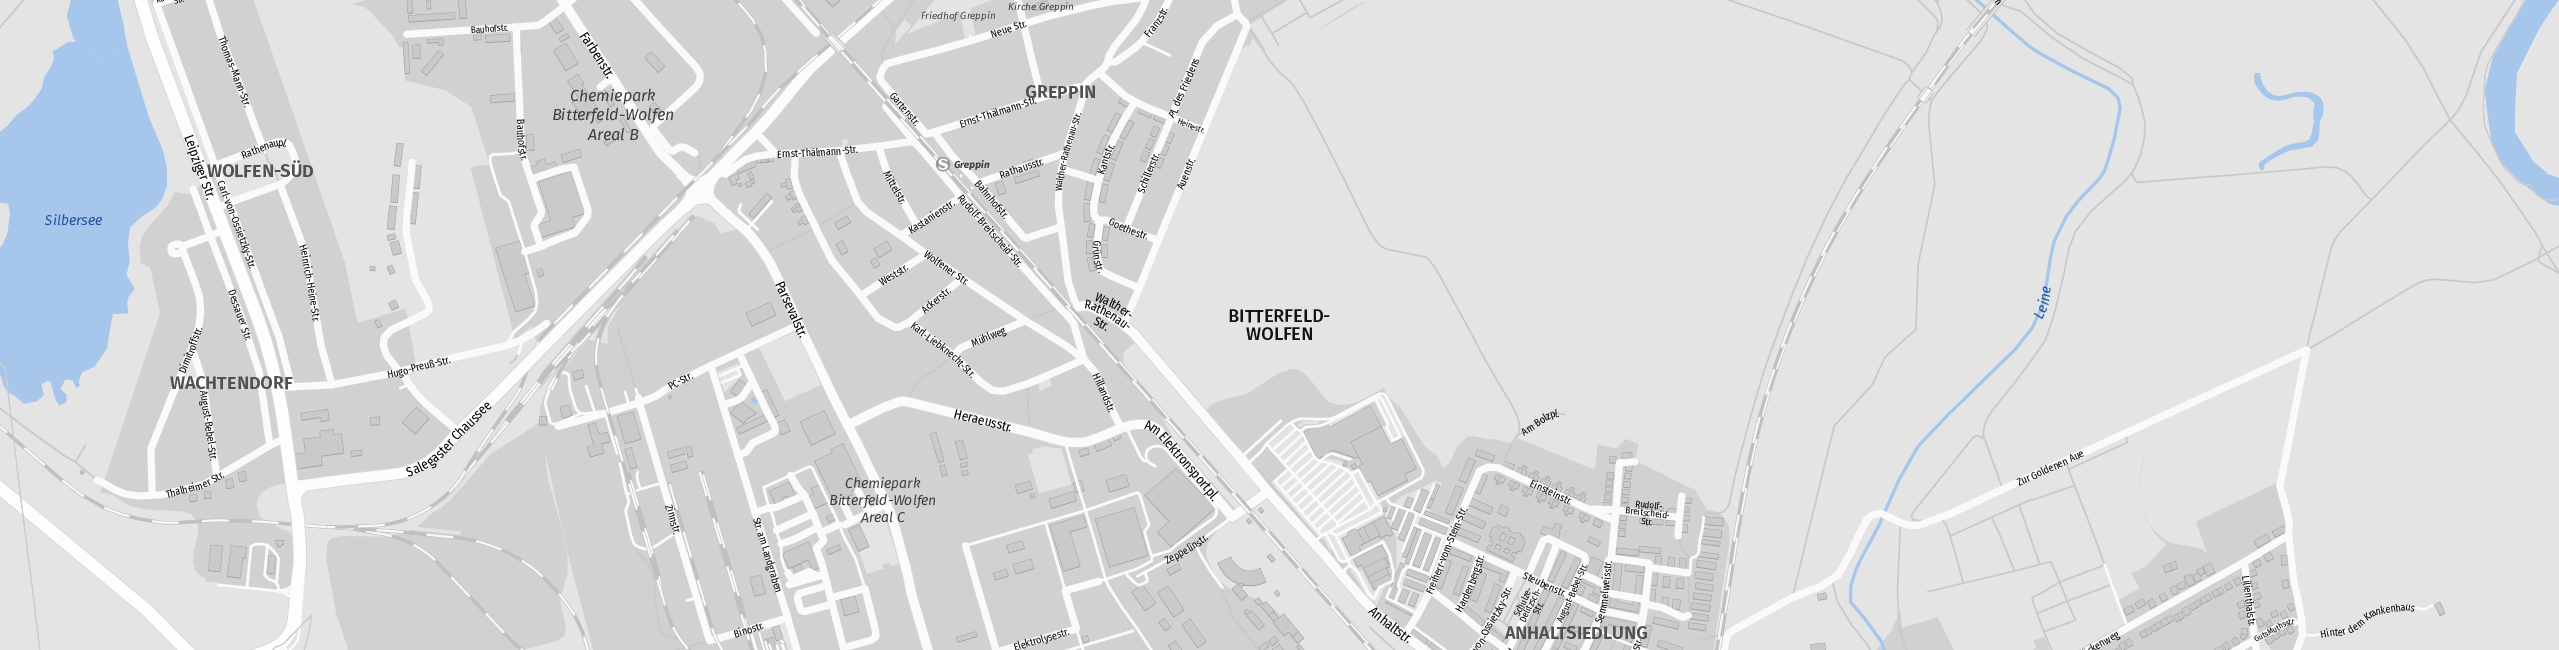 Stadtplan Bitterfeld-Wolfen zum Downloaden.